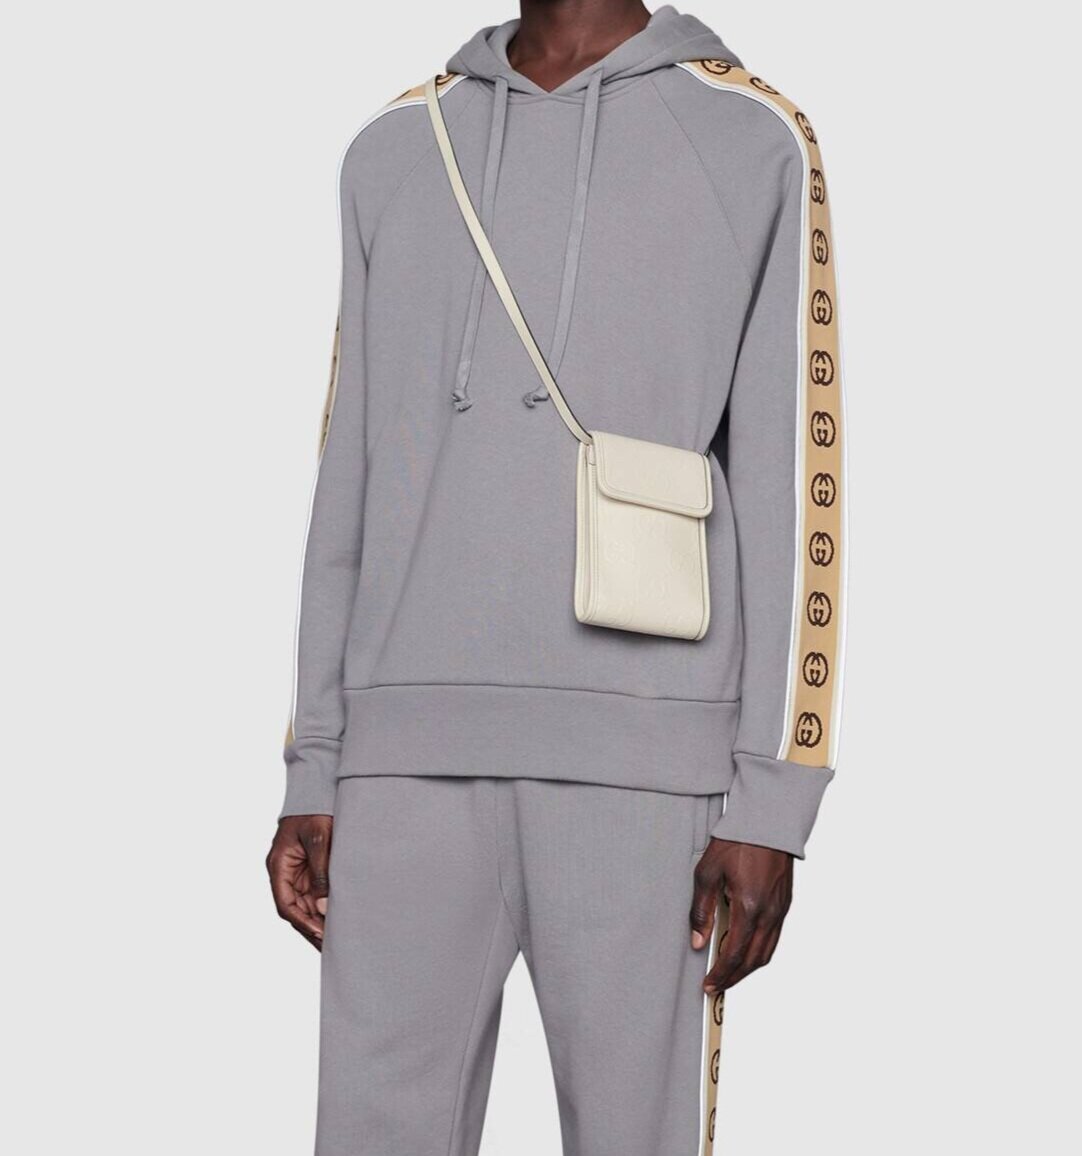 Gucci Embossed Mini Bag - $795